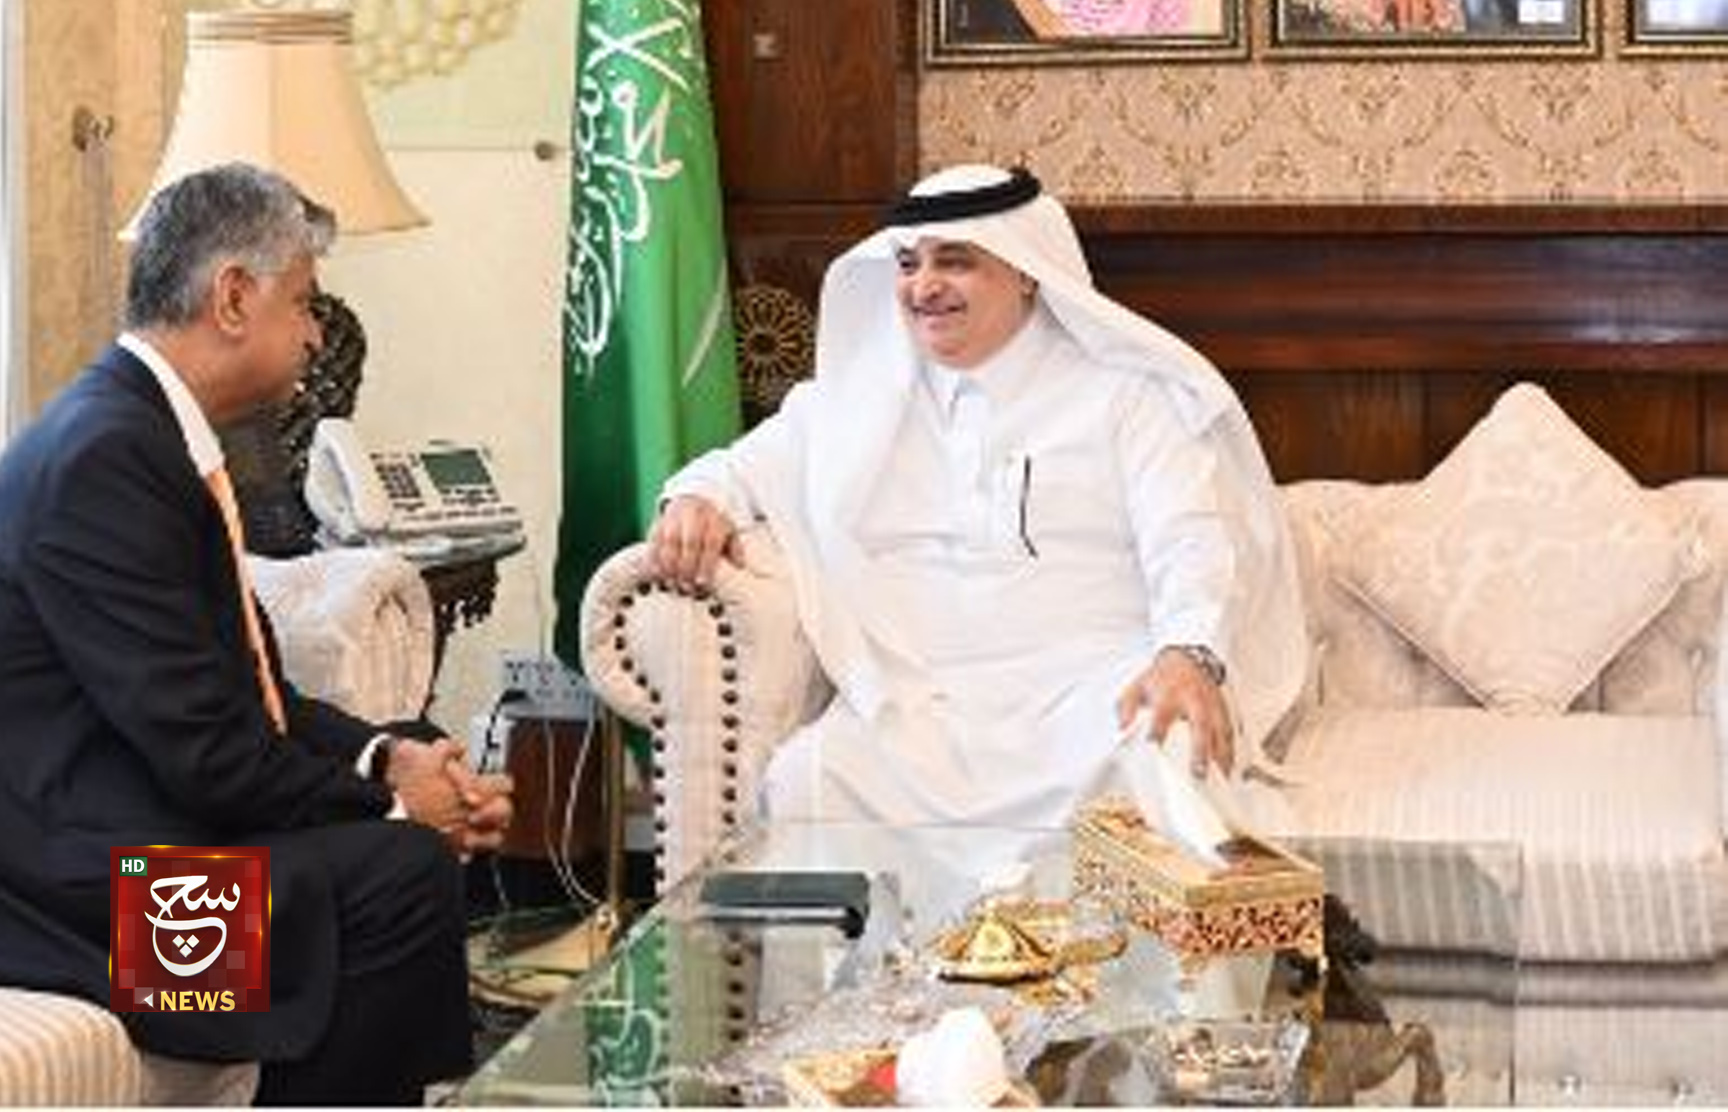 باكستان والسعودية تتوصلان إلى توافق في الآراء بشأن طرق الاستثمار